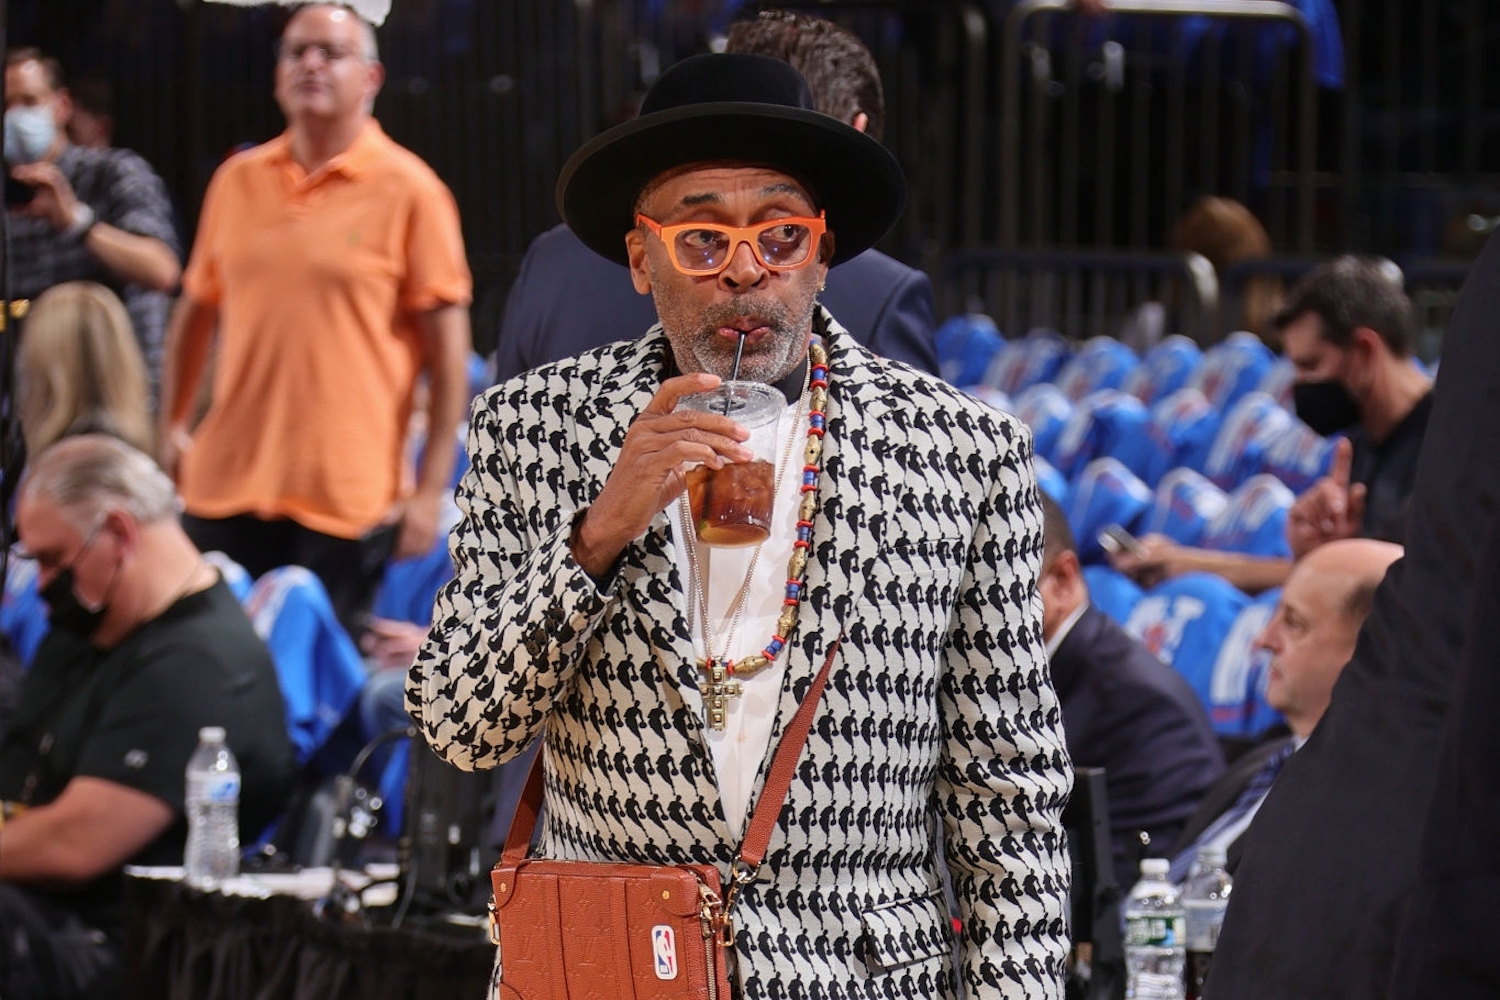 Spike Lee Rocks Up To A New York Knicks Game Dressed Like A Women’s Handbag